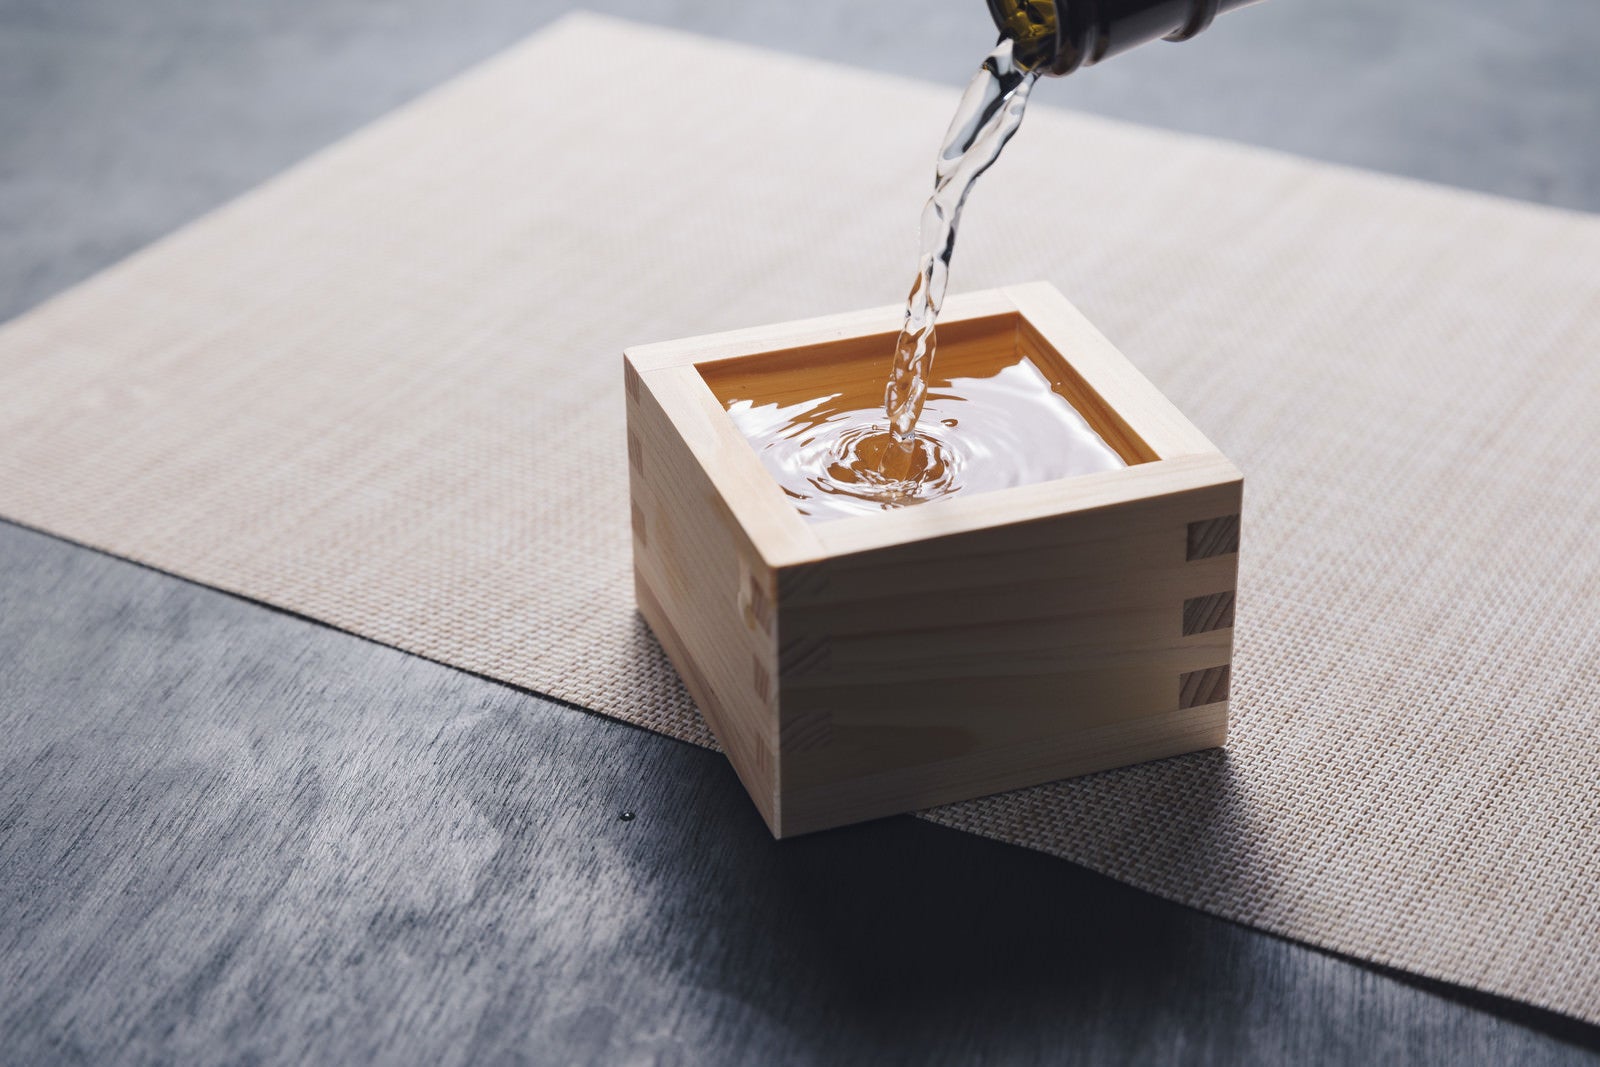 「升に注ぐ日本酒」の写真